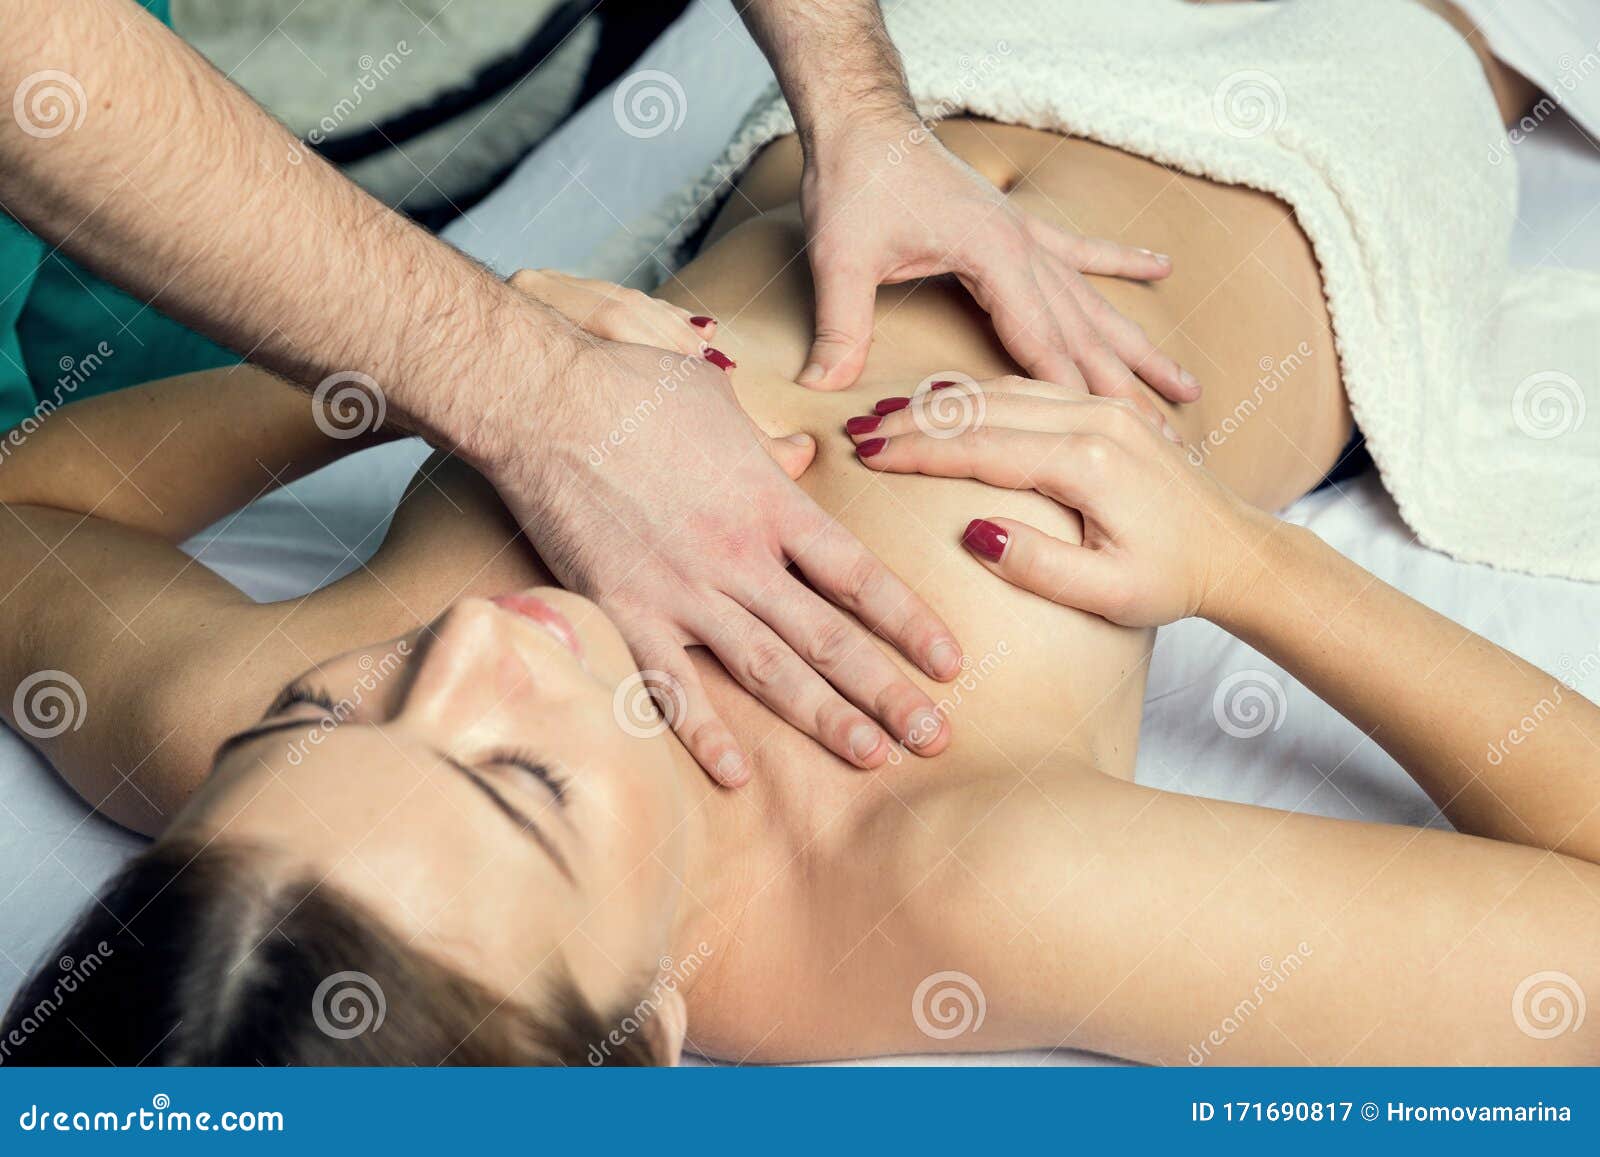 эрот массаж грудью фото 114